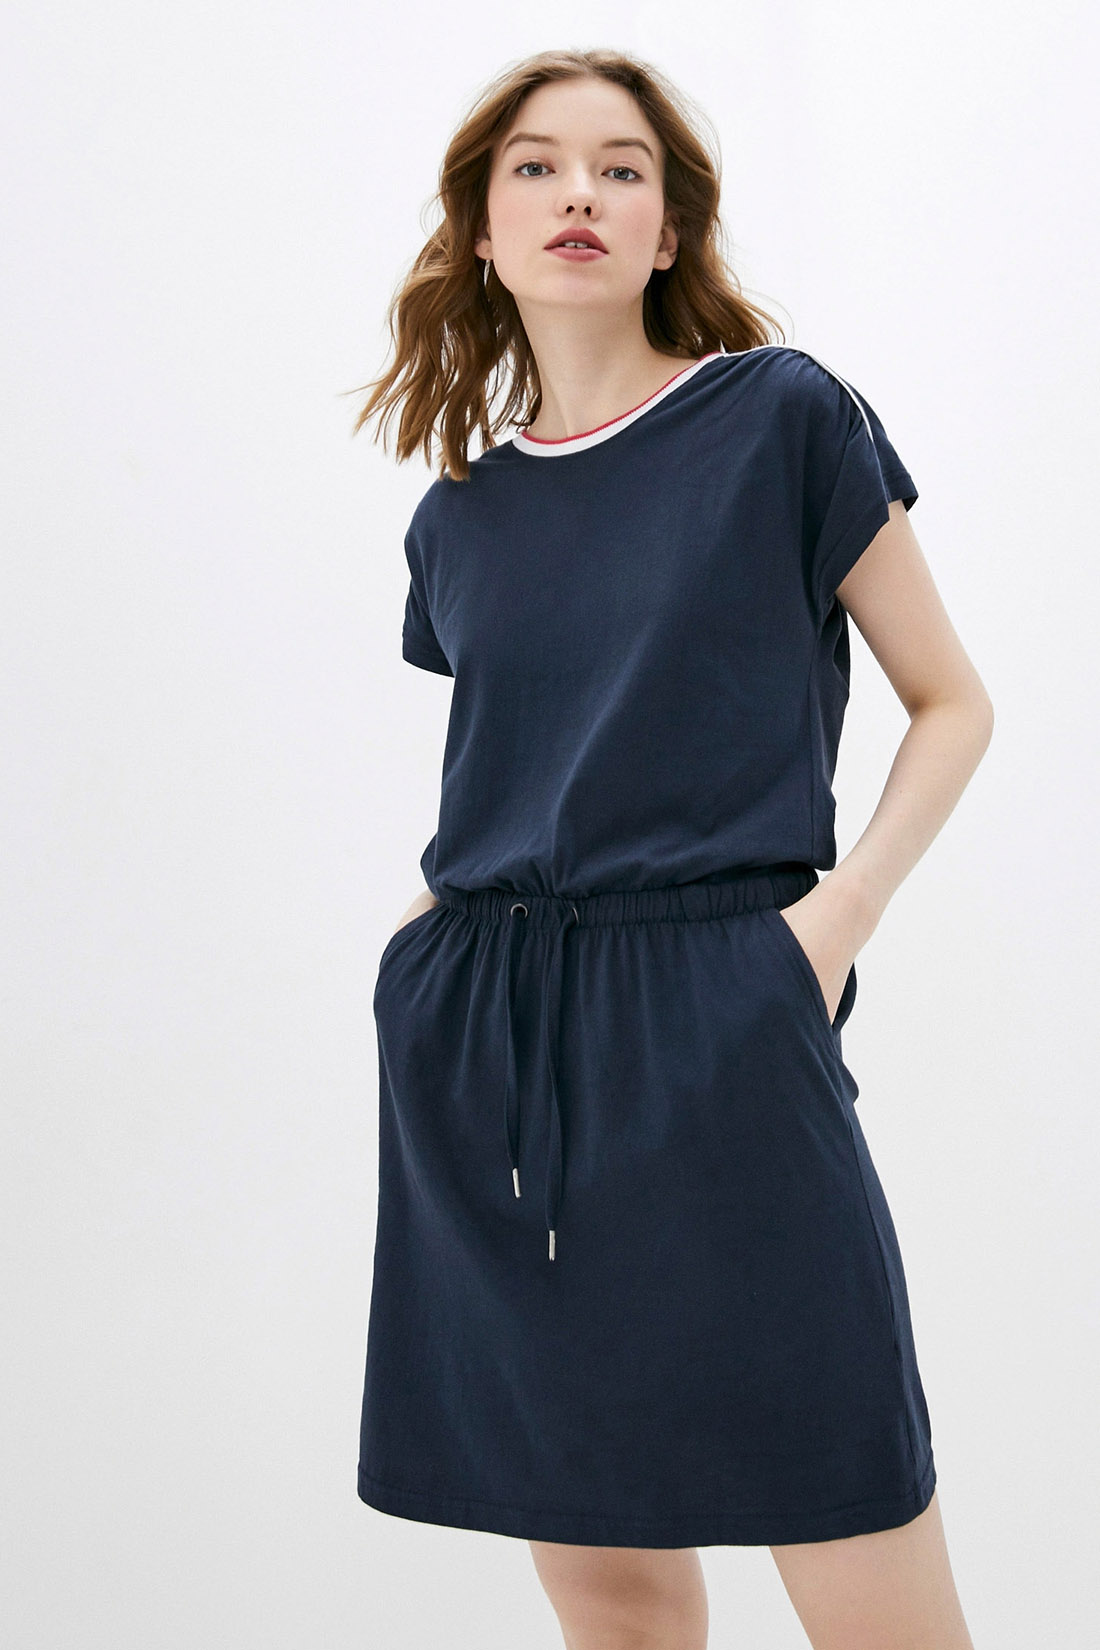 Платье-футболка с кулиской (арт. baon B459097), размер S, цвет синий Платье-футболка с кулиской (арт. baon B459097) - фото 4